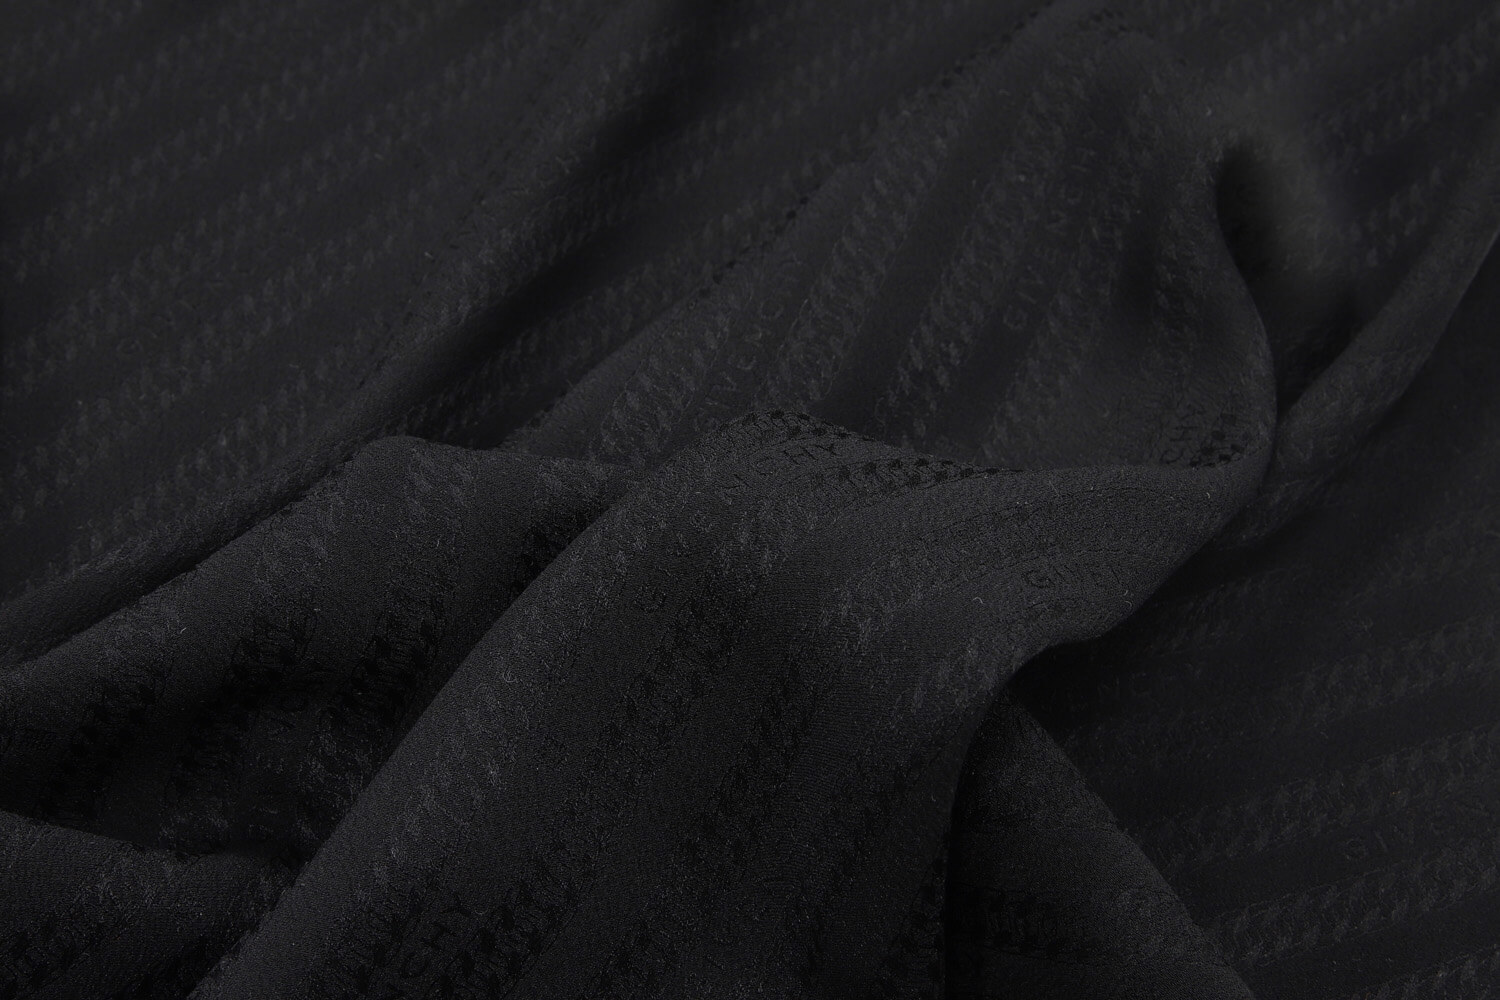 Шелк с жаккардовой выработкой Givenchy, цвет Черный, фото 1